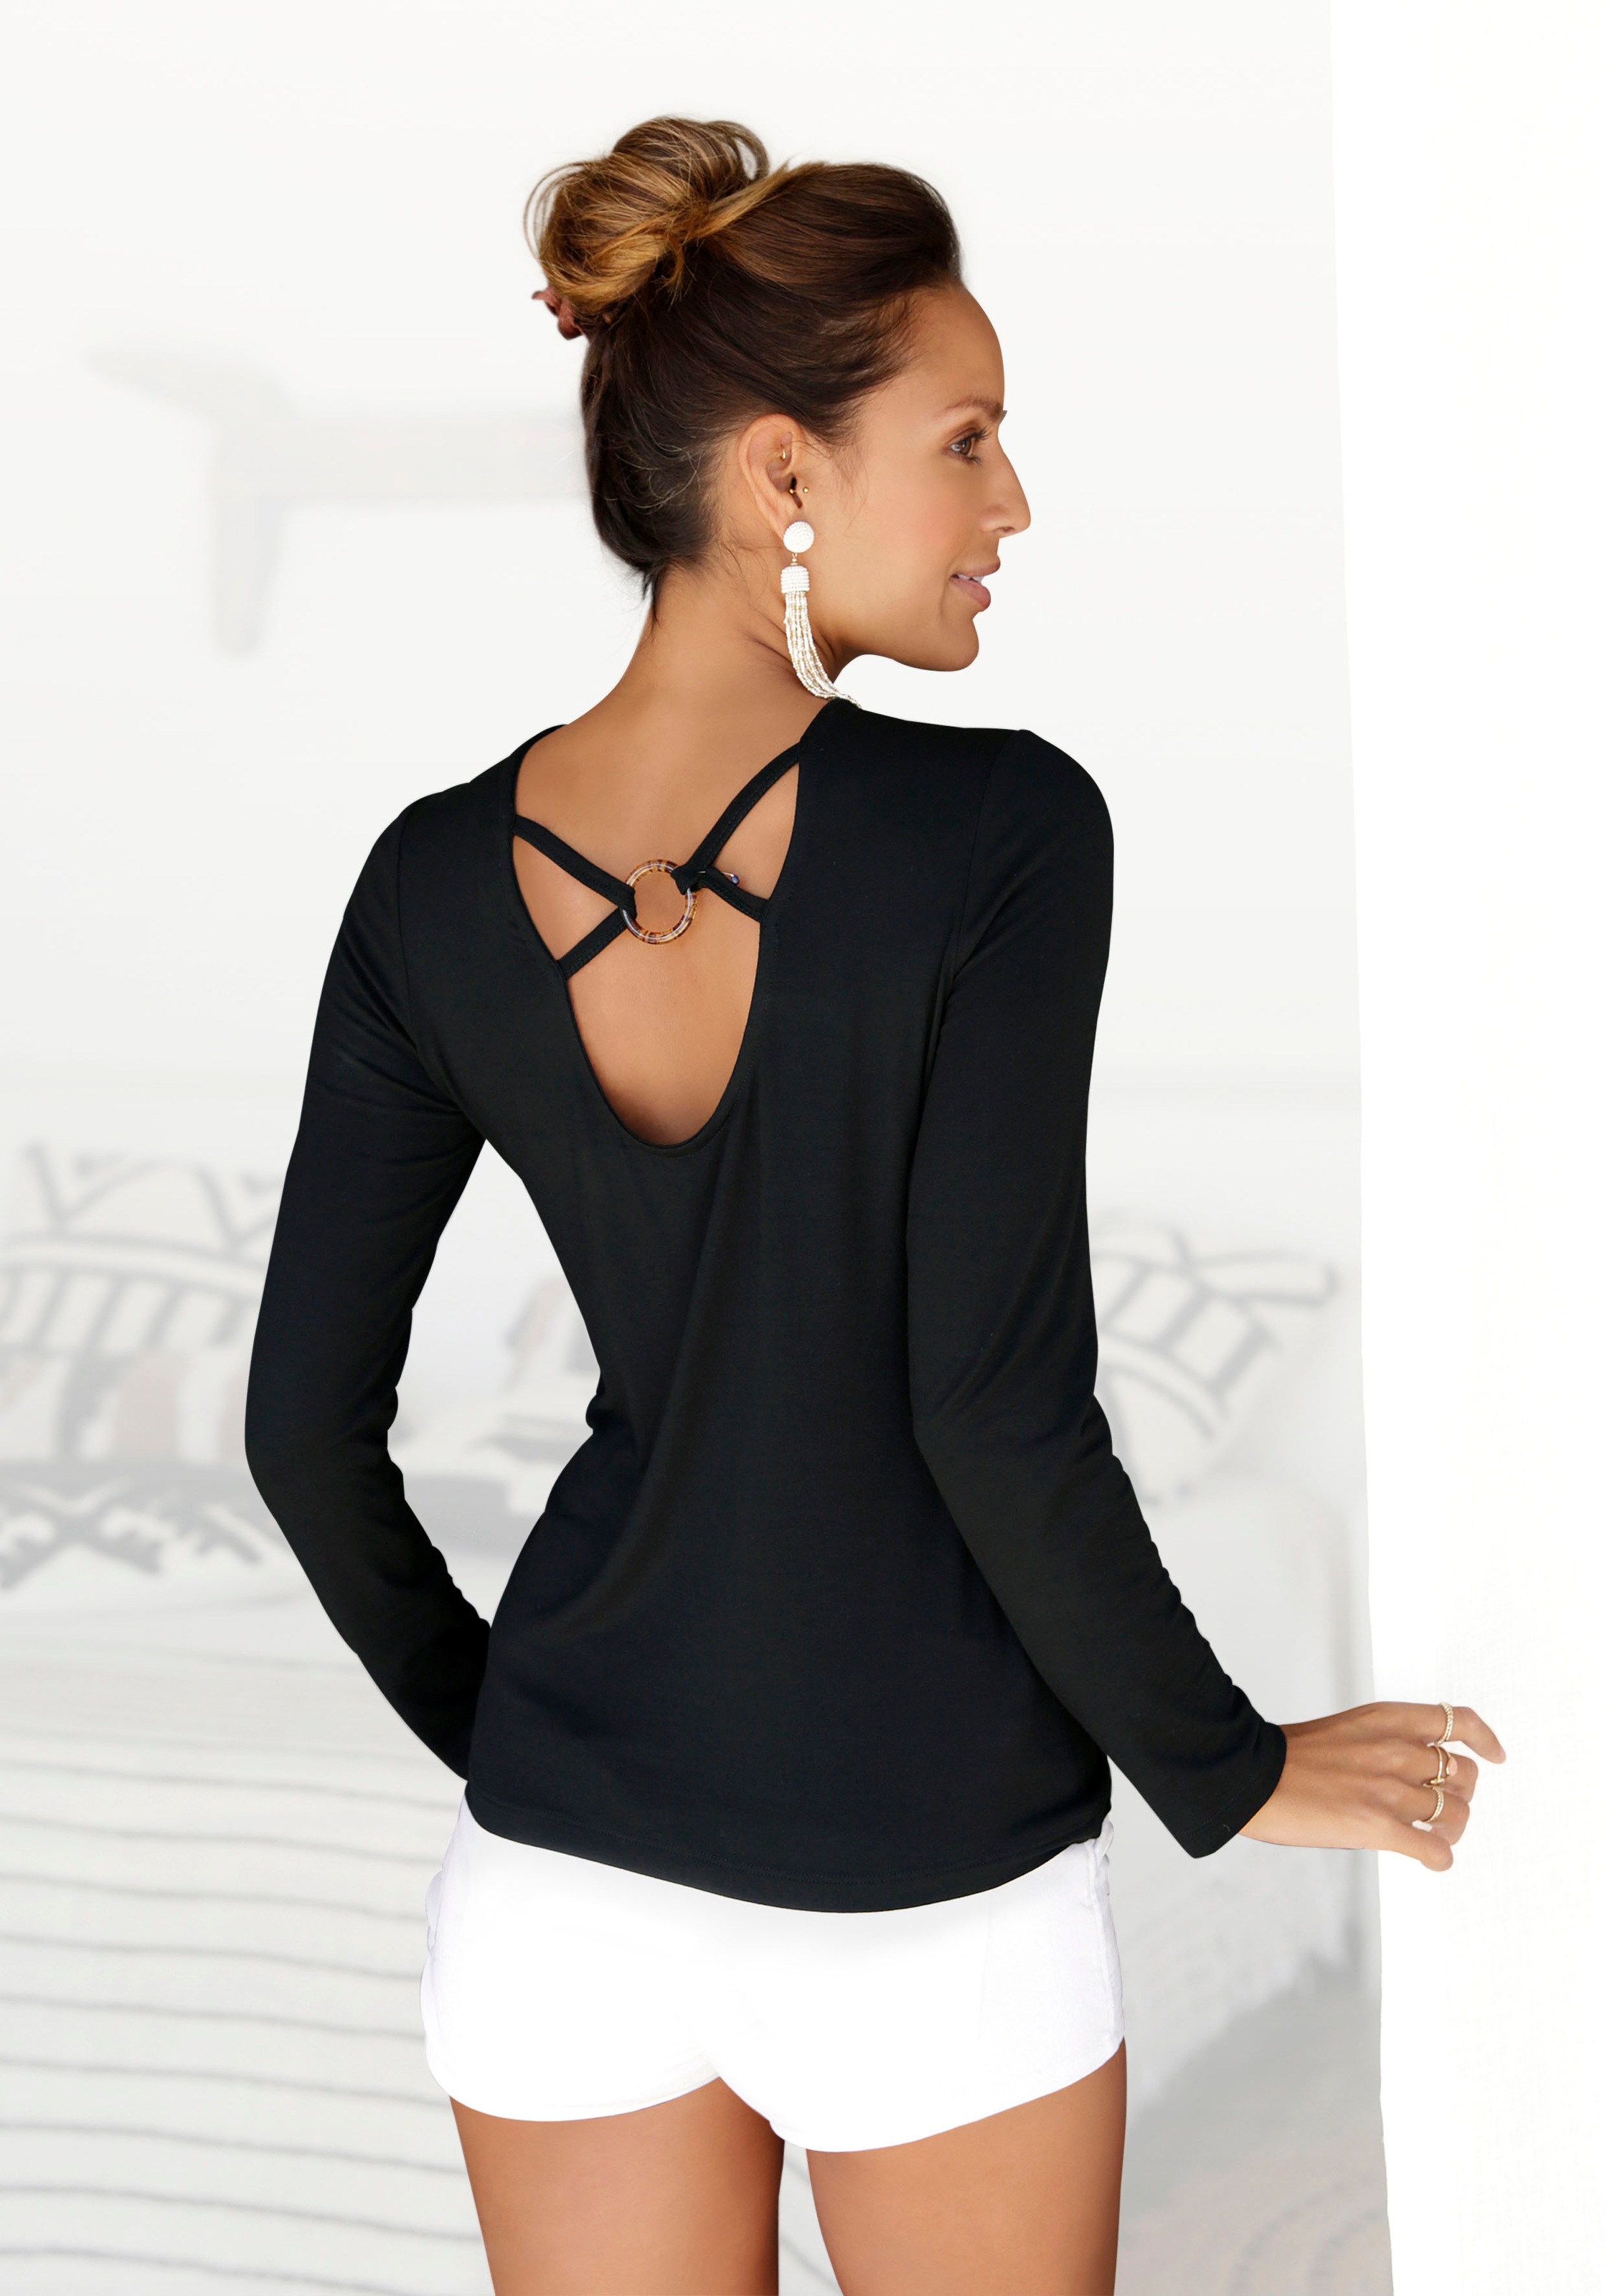 & Lingerie » LASCANA tiefem LASCANA kaufen online mit Langarmshirt, Rückenausschnitt Unterwäsche | Bademode,